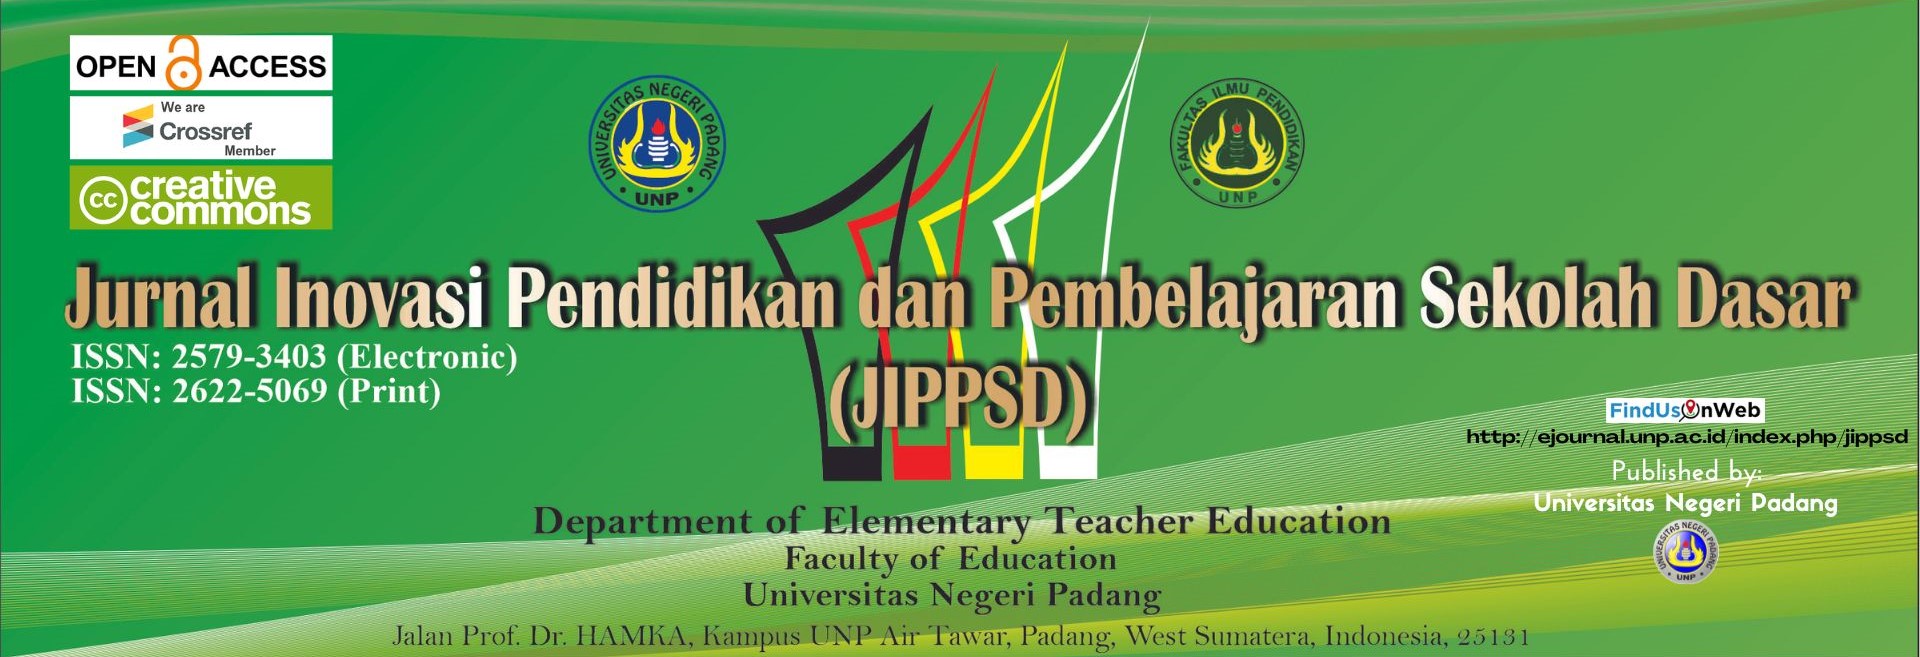 Journal Inovasi Pendidikan dan Pembelajaran Sekolah Dasar (JIPPSD) PGSD FIP UNP